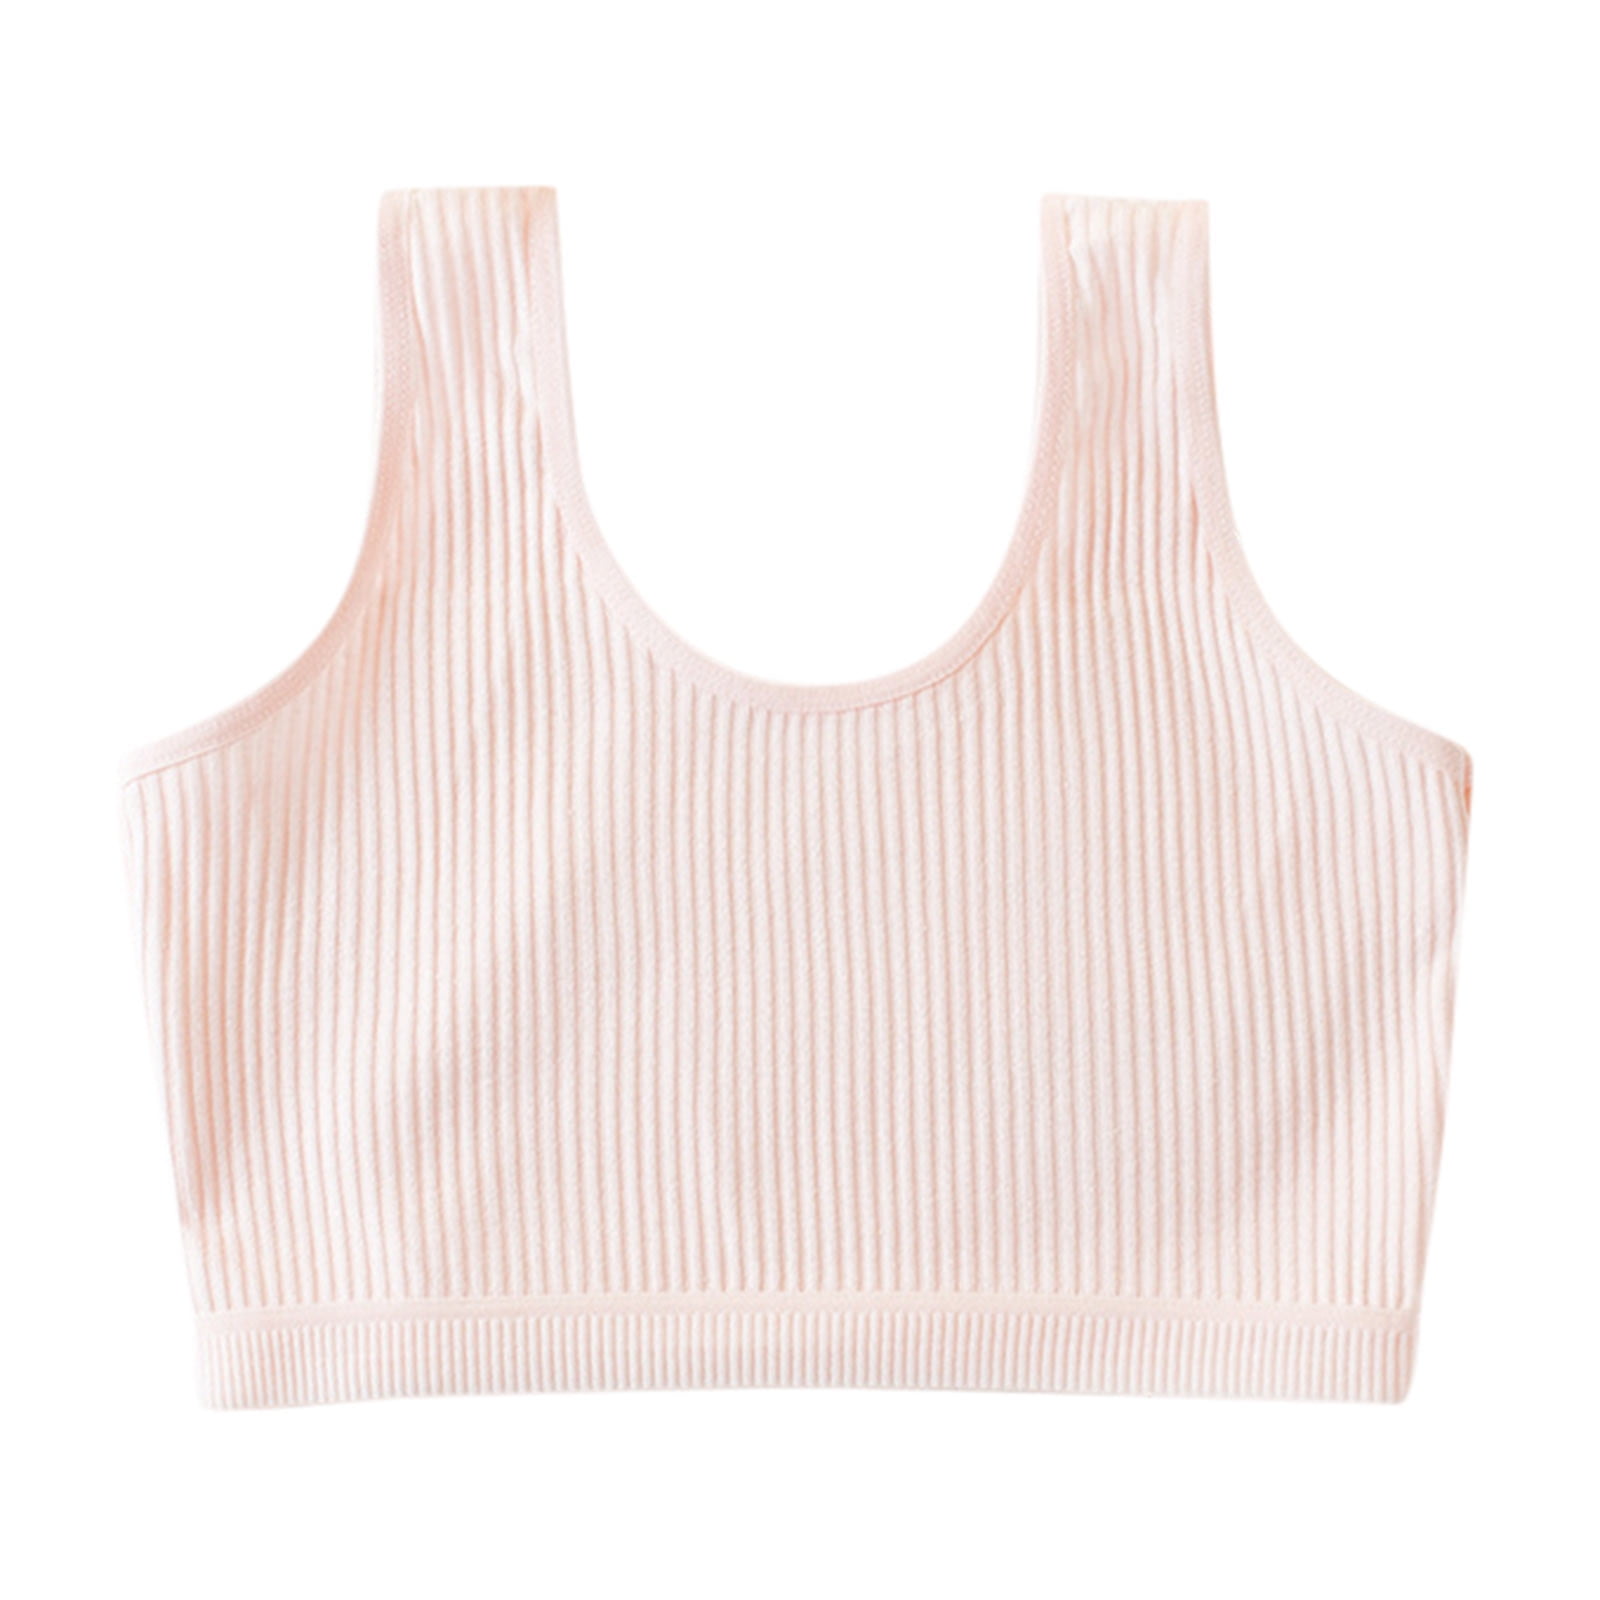 Odeerbi Reduced Bras for Girls Lingerie Kids Underwear Cotton Bra Vest ...